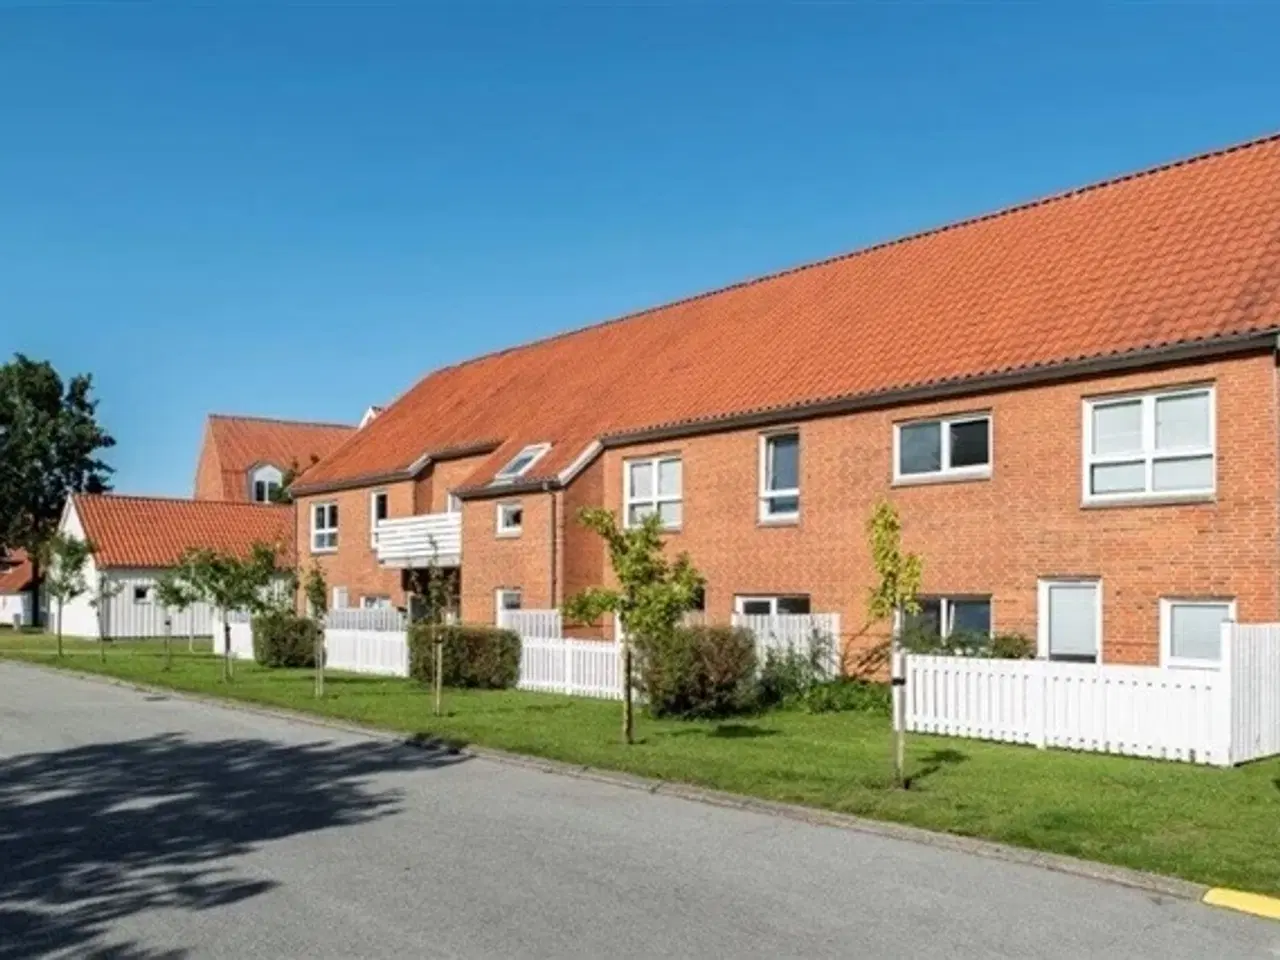 Billede 1 - Markedsvej, 64 m2, 2 værelser, 4.894 kr., Frederikshavn, Nordjylland